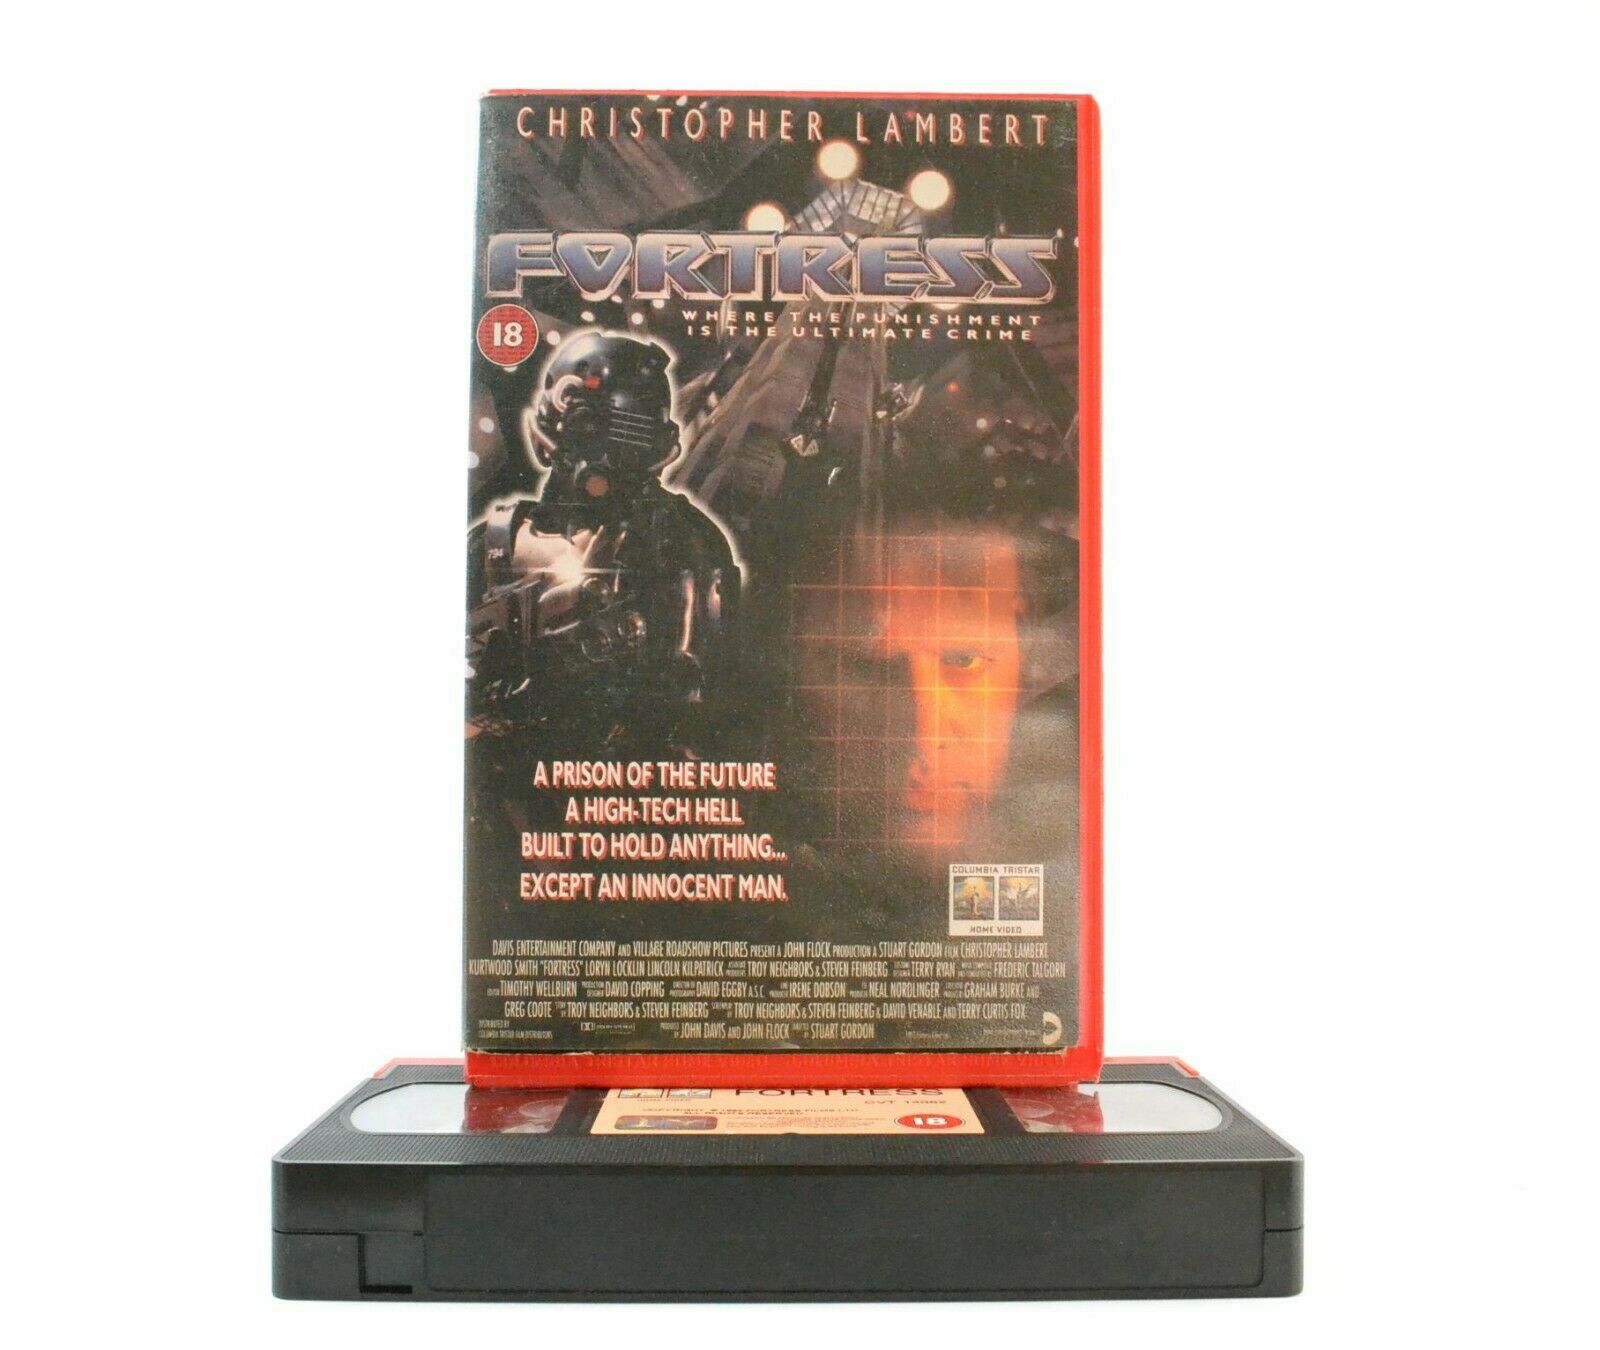 Fortress: Columbia (1992) - Large Box - Sci-Fi - C.Lambert/K.Smith - Pal VHS-